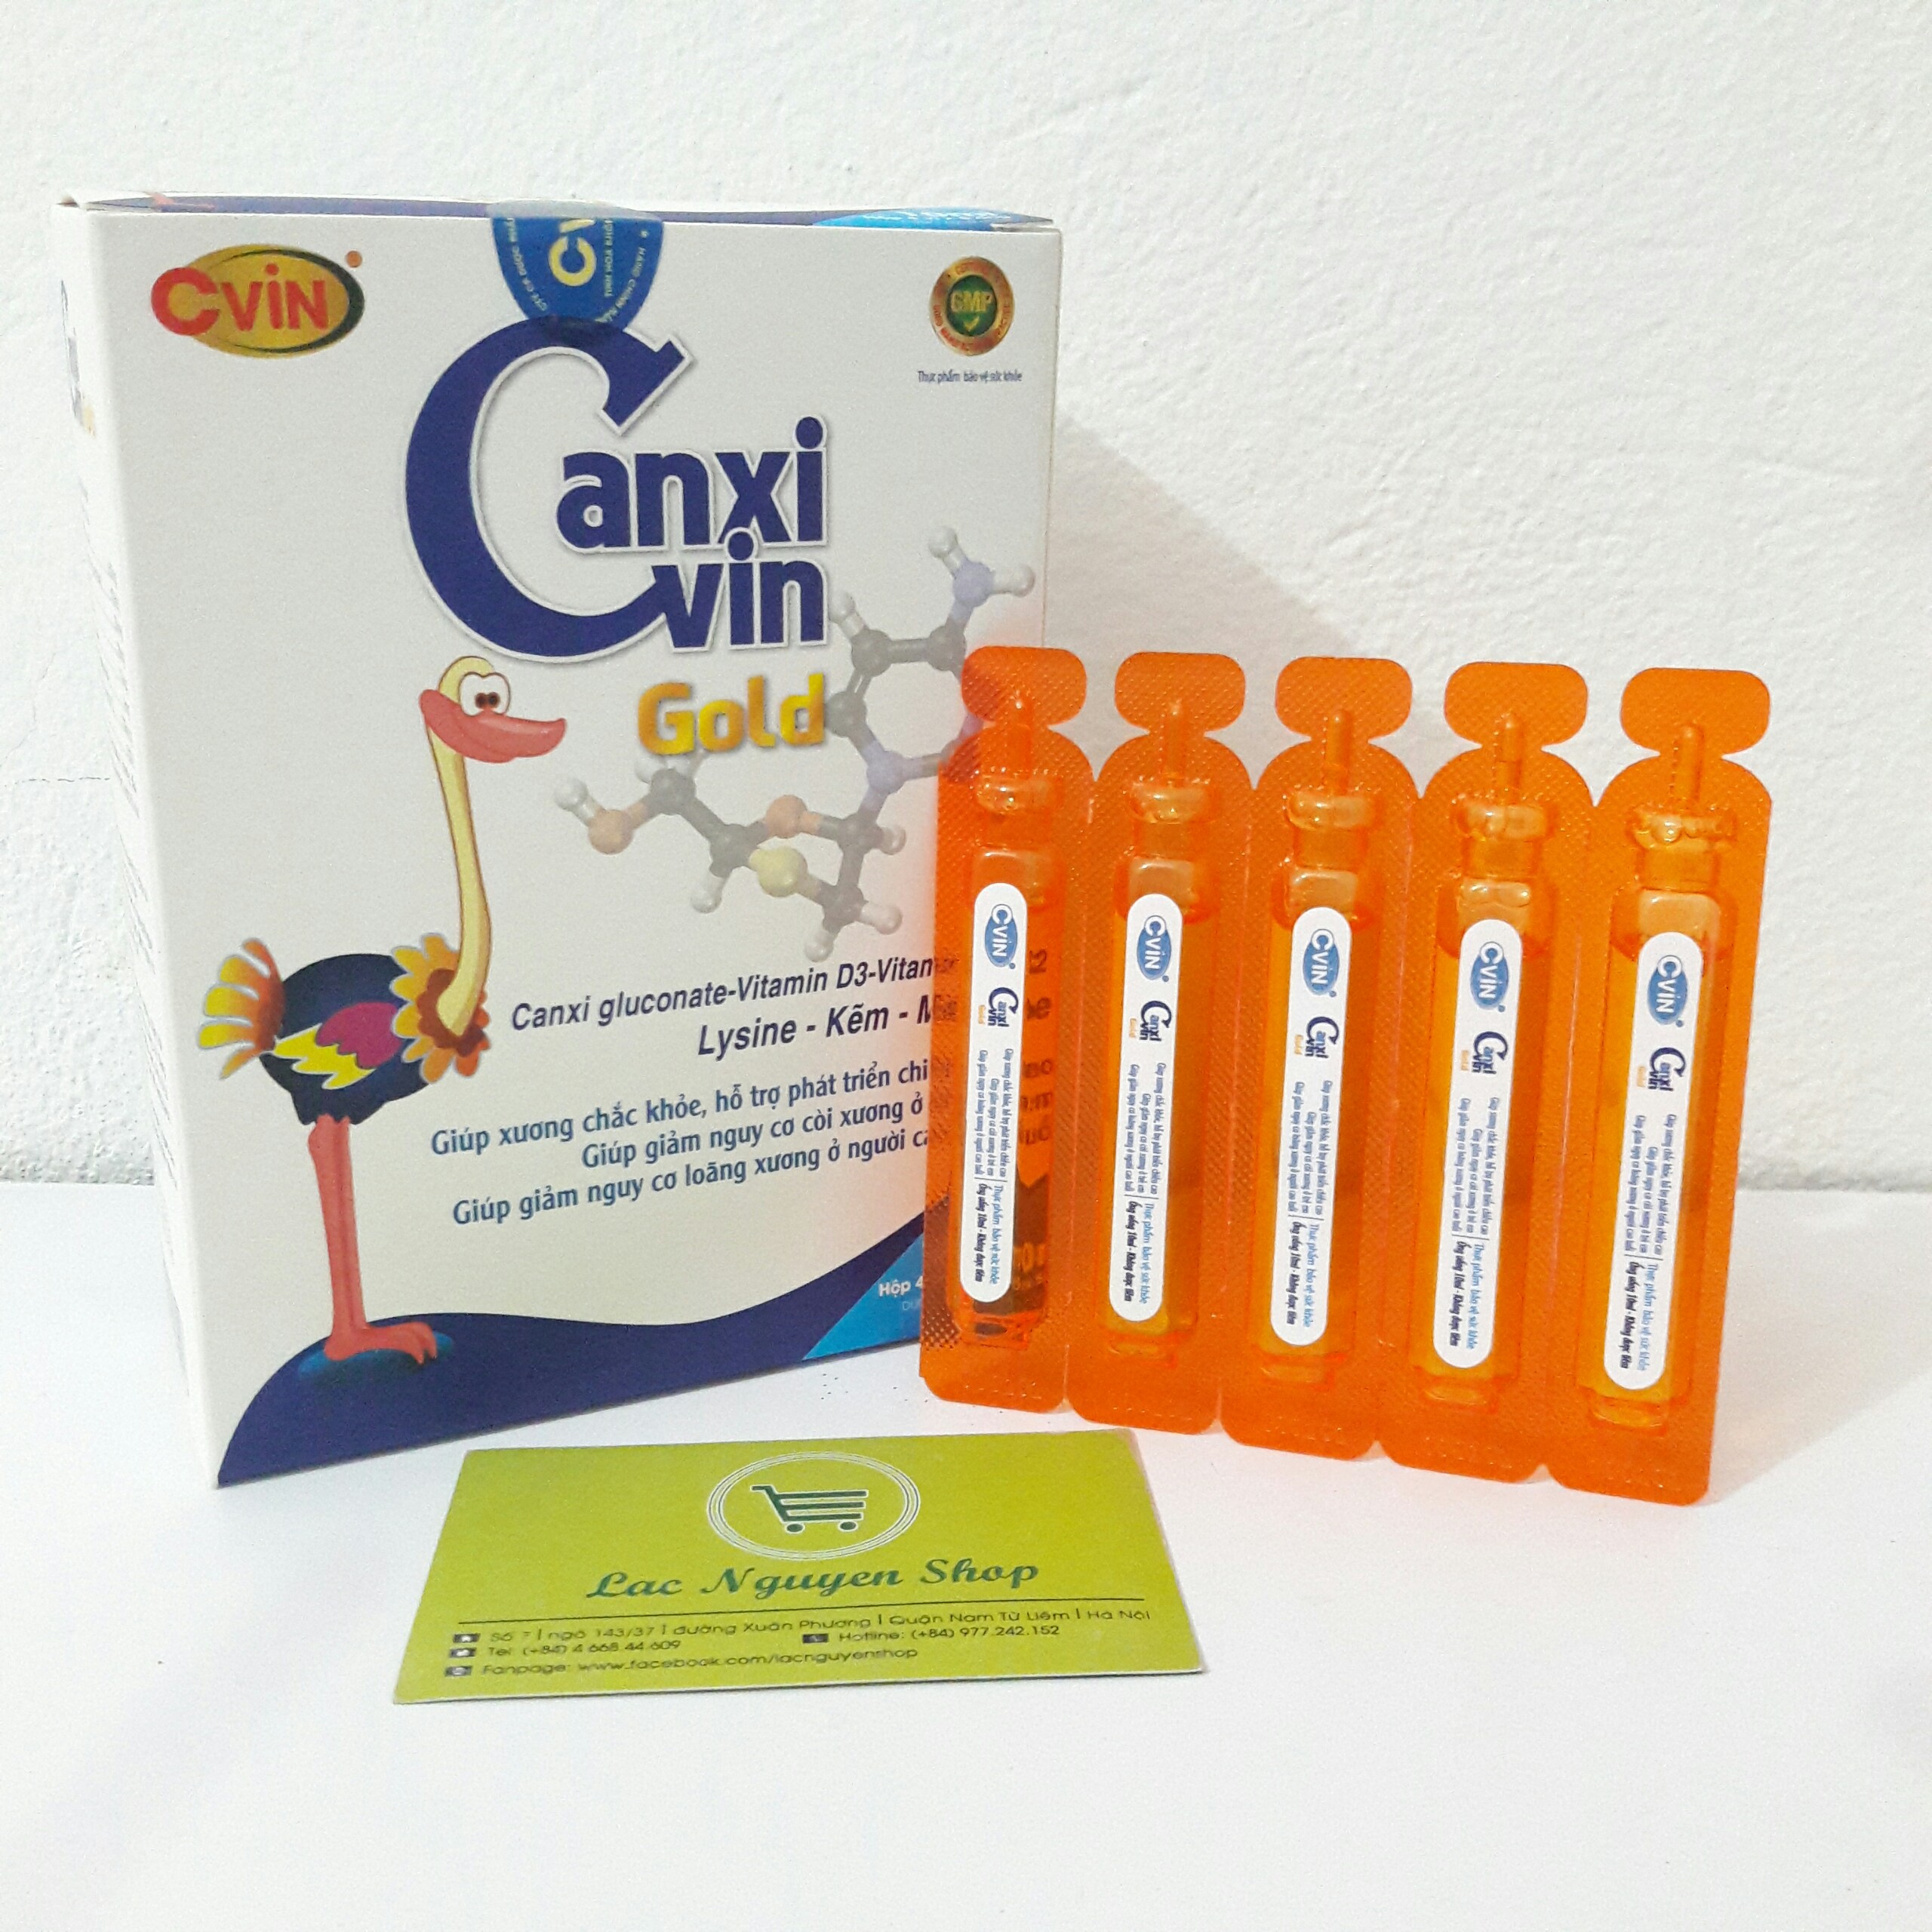 Canxi Cvin Gold - Canxi hữu cơ vitamin D3 &amp; K2